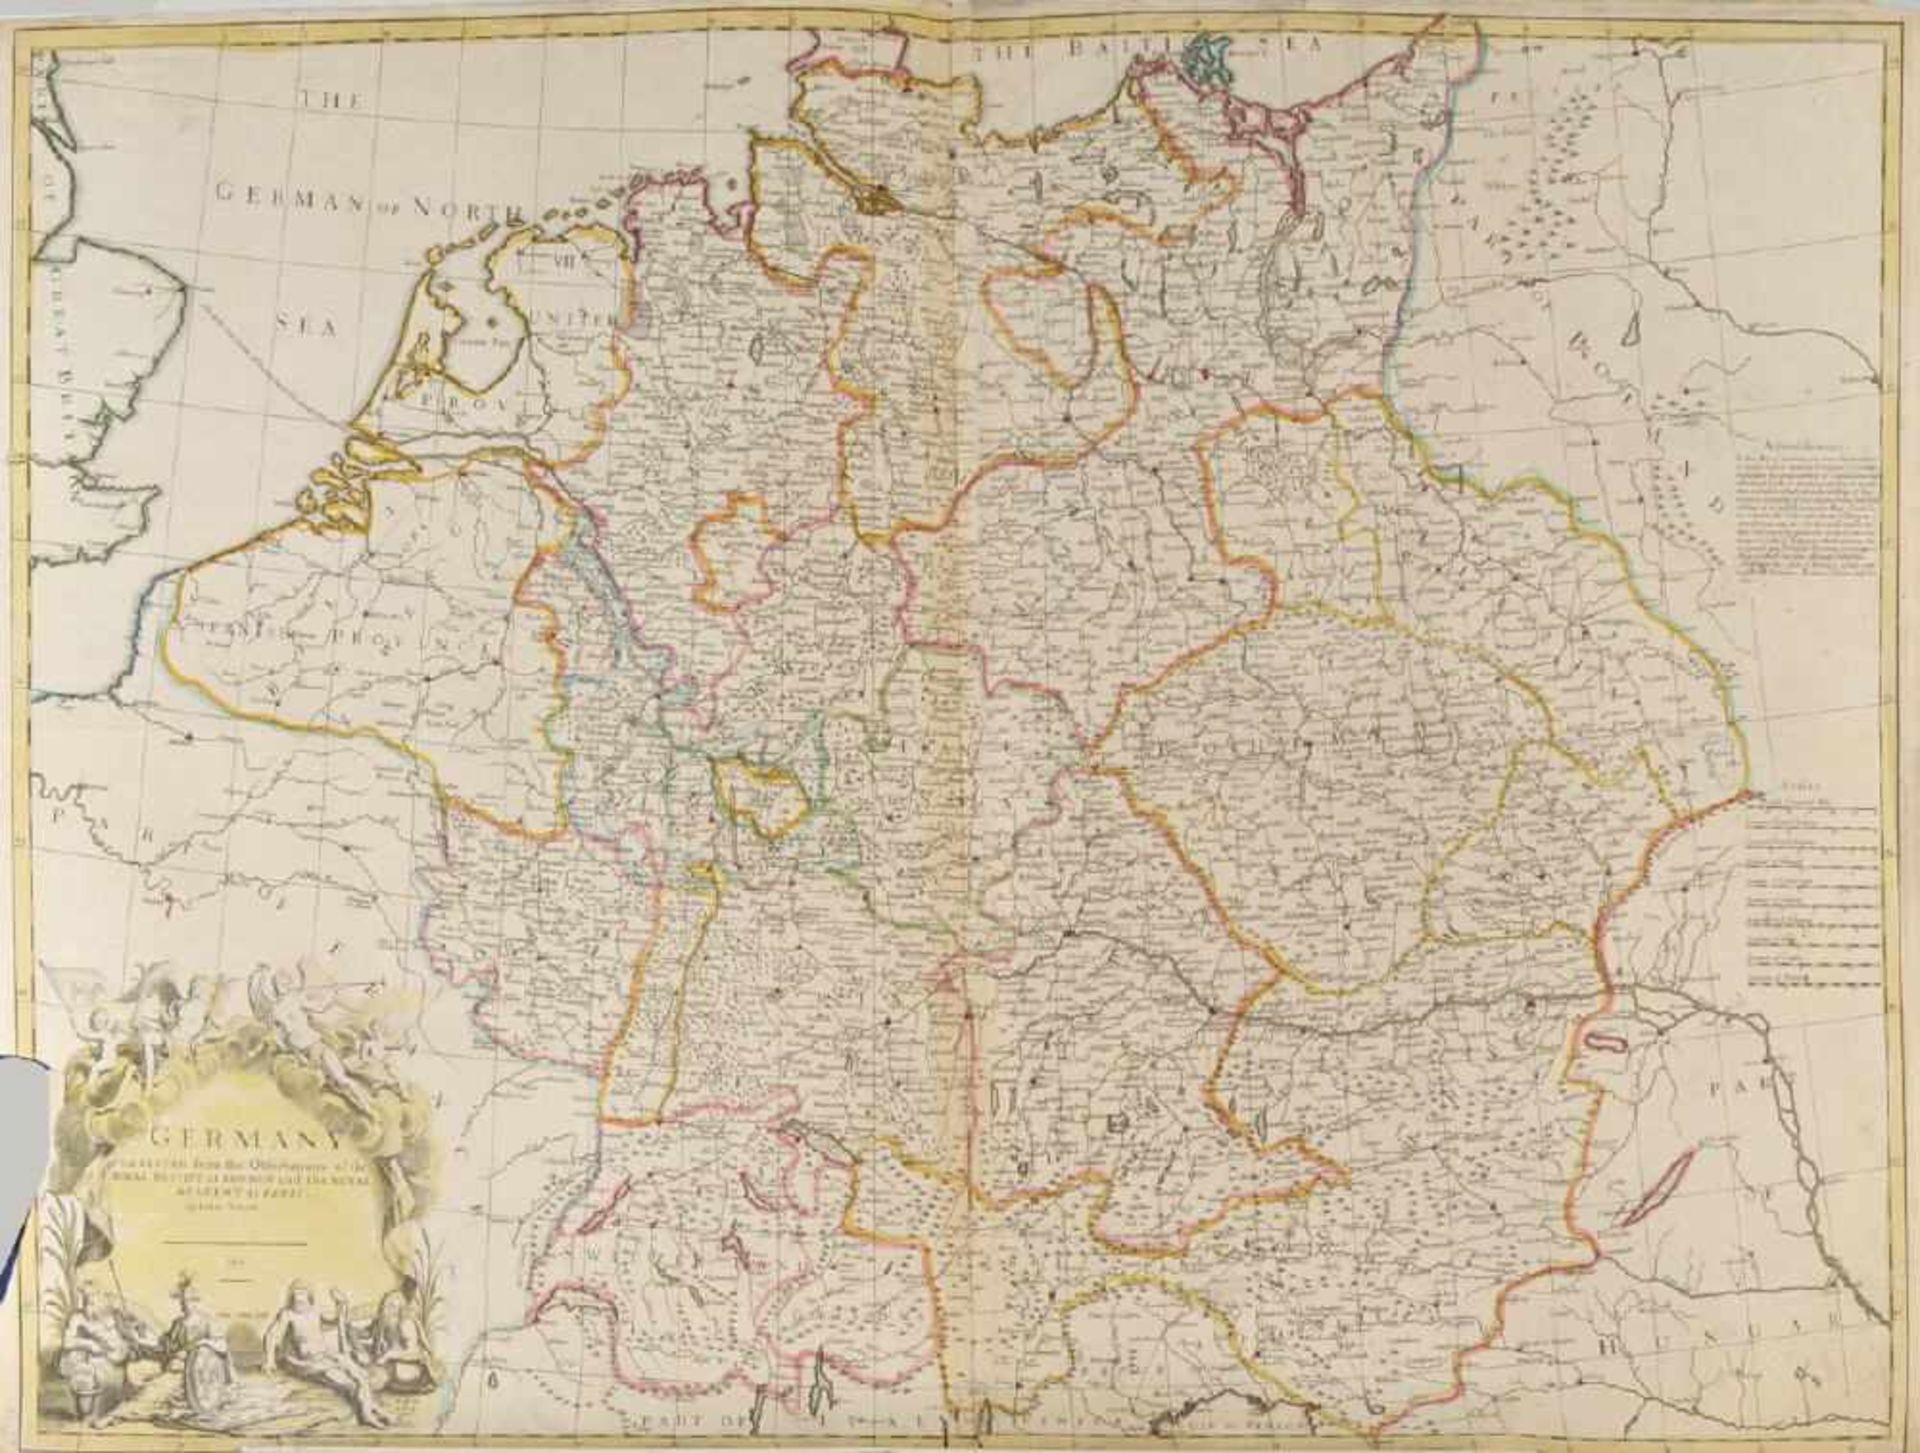 Landkarte "Deutschland"Kupferstich, handcolor., 65 x 95 cm, von John Senex, London, 1710, linker